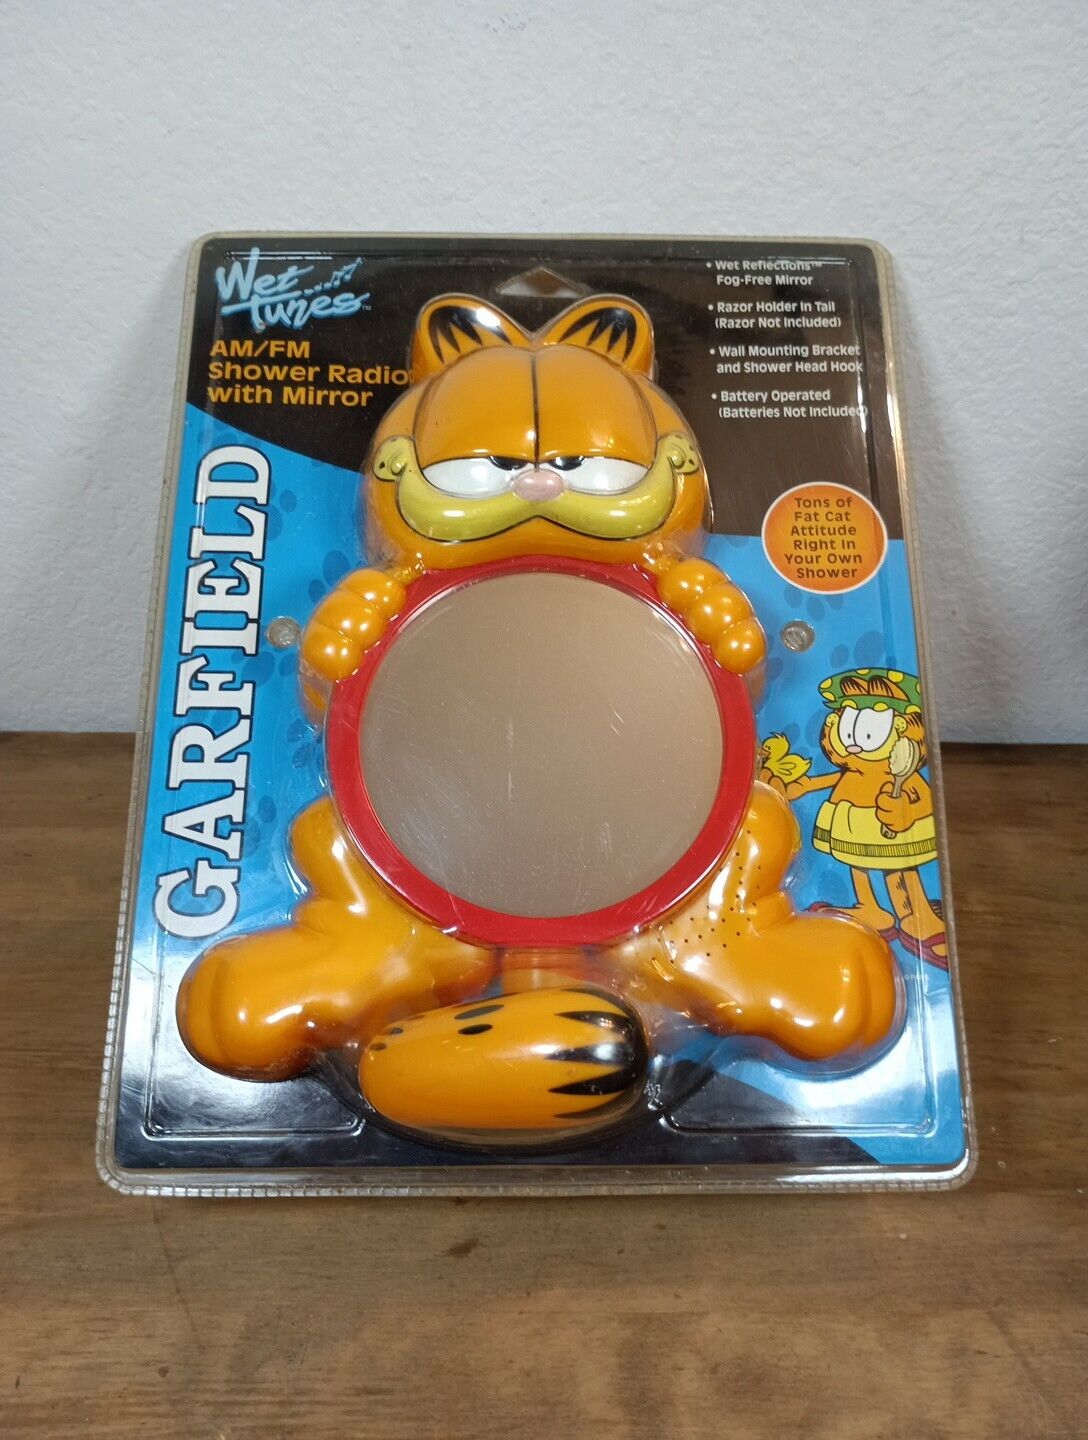 Vintage Wet Tunes Garfield AM/FM Shower Radio With Mirror Brand New Unopened